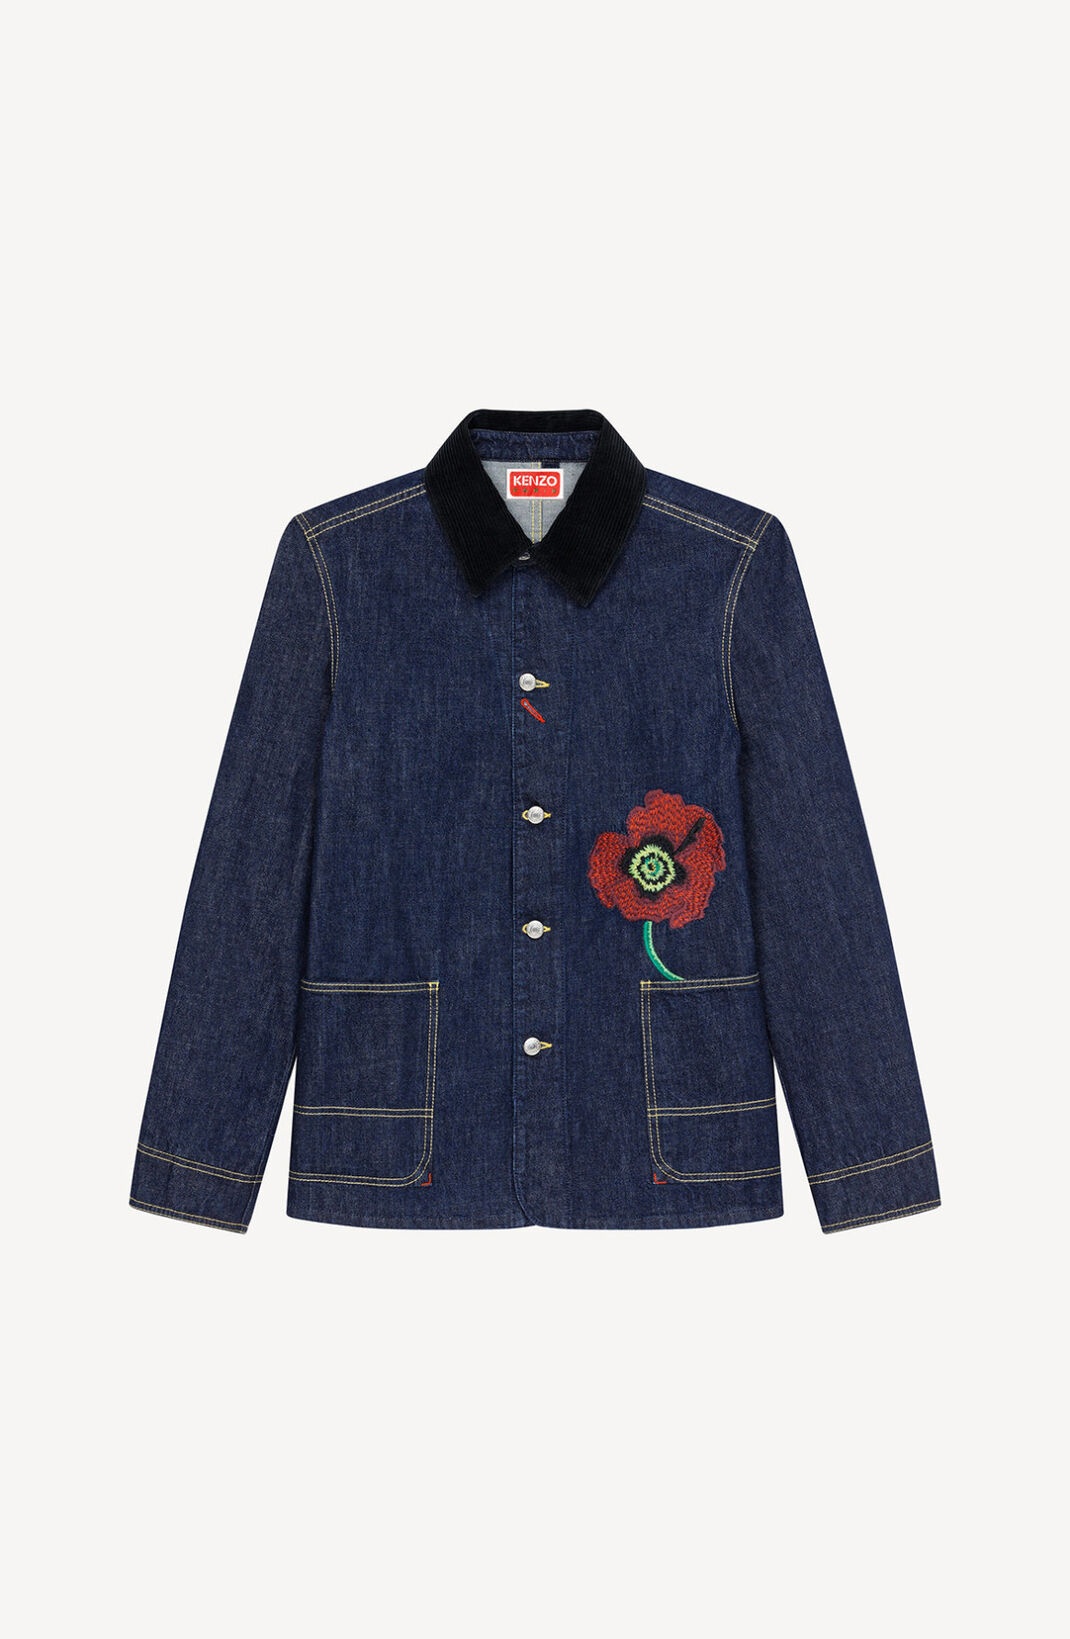 'KENZO Poppy' workwear denim jacket - 1